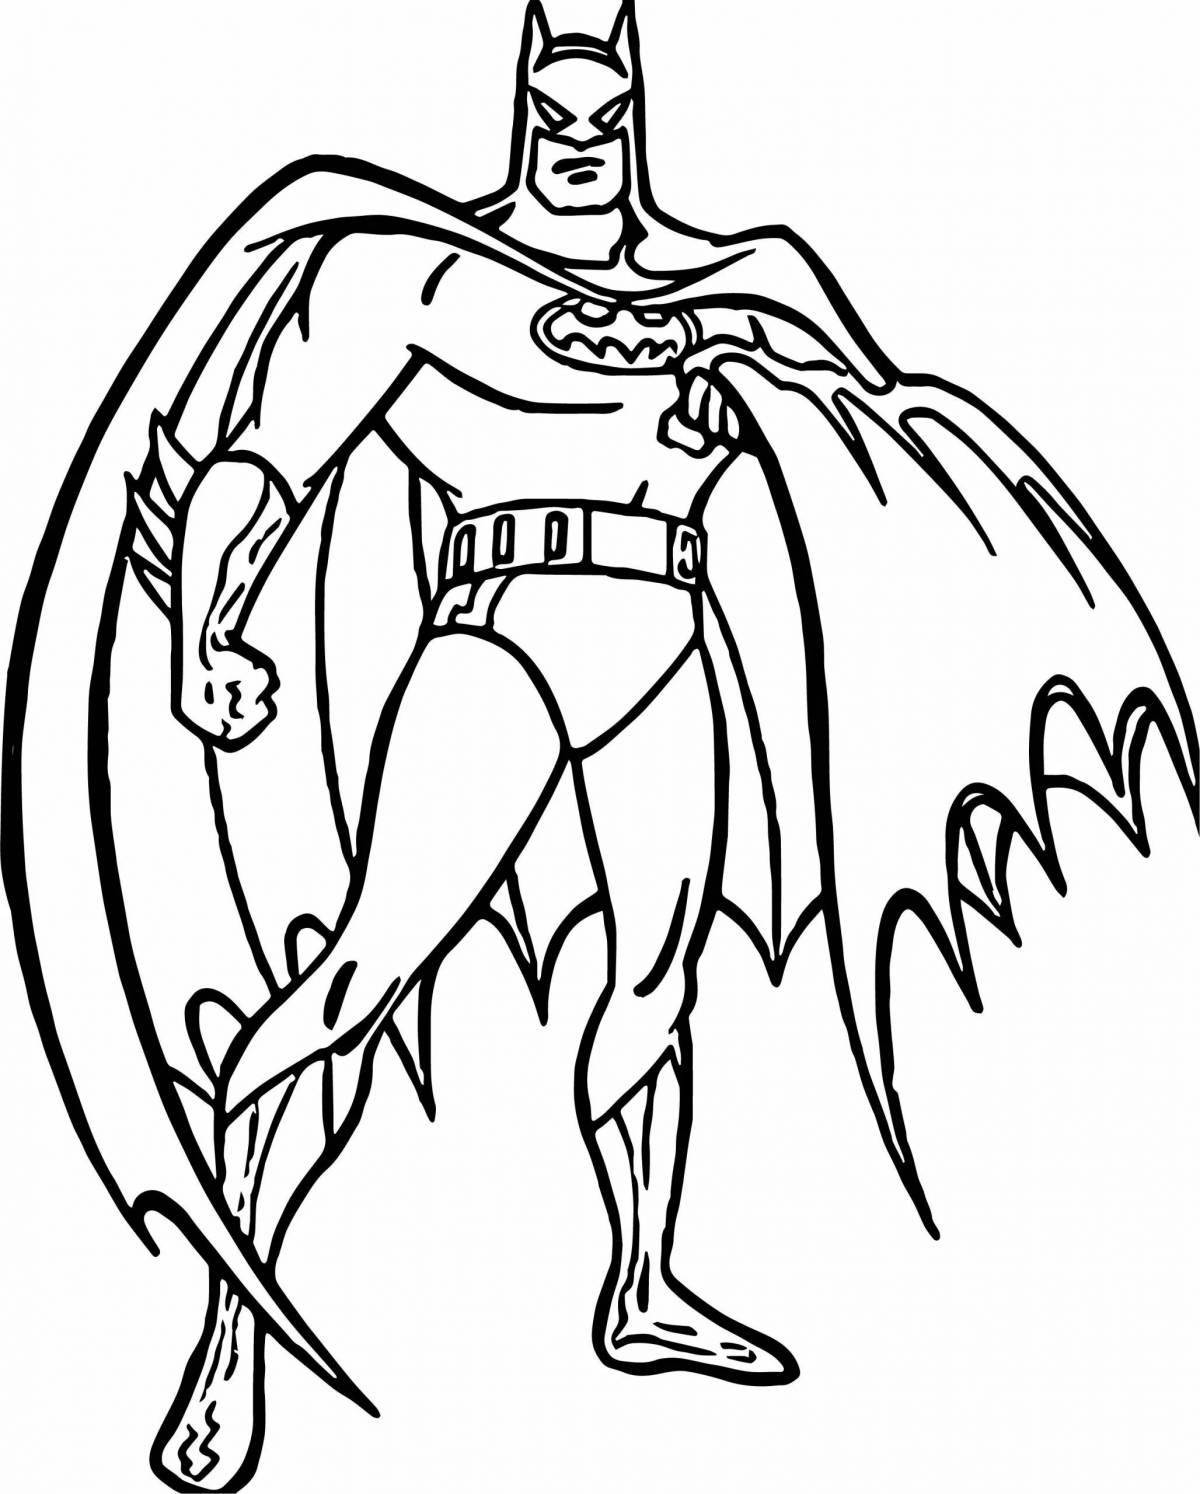 Batman dynamic coloring